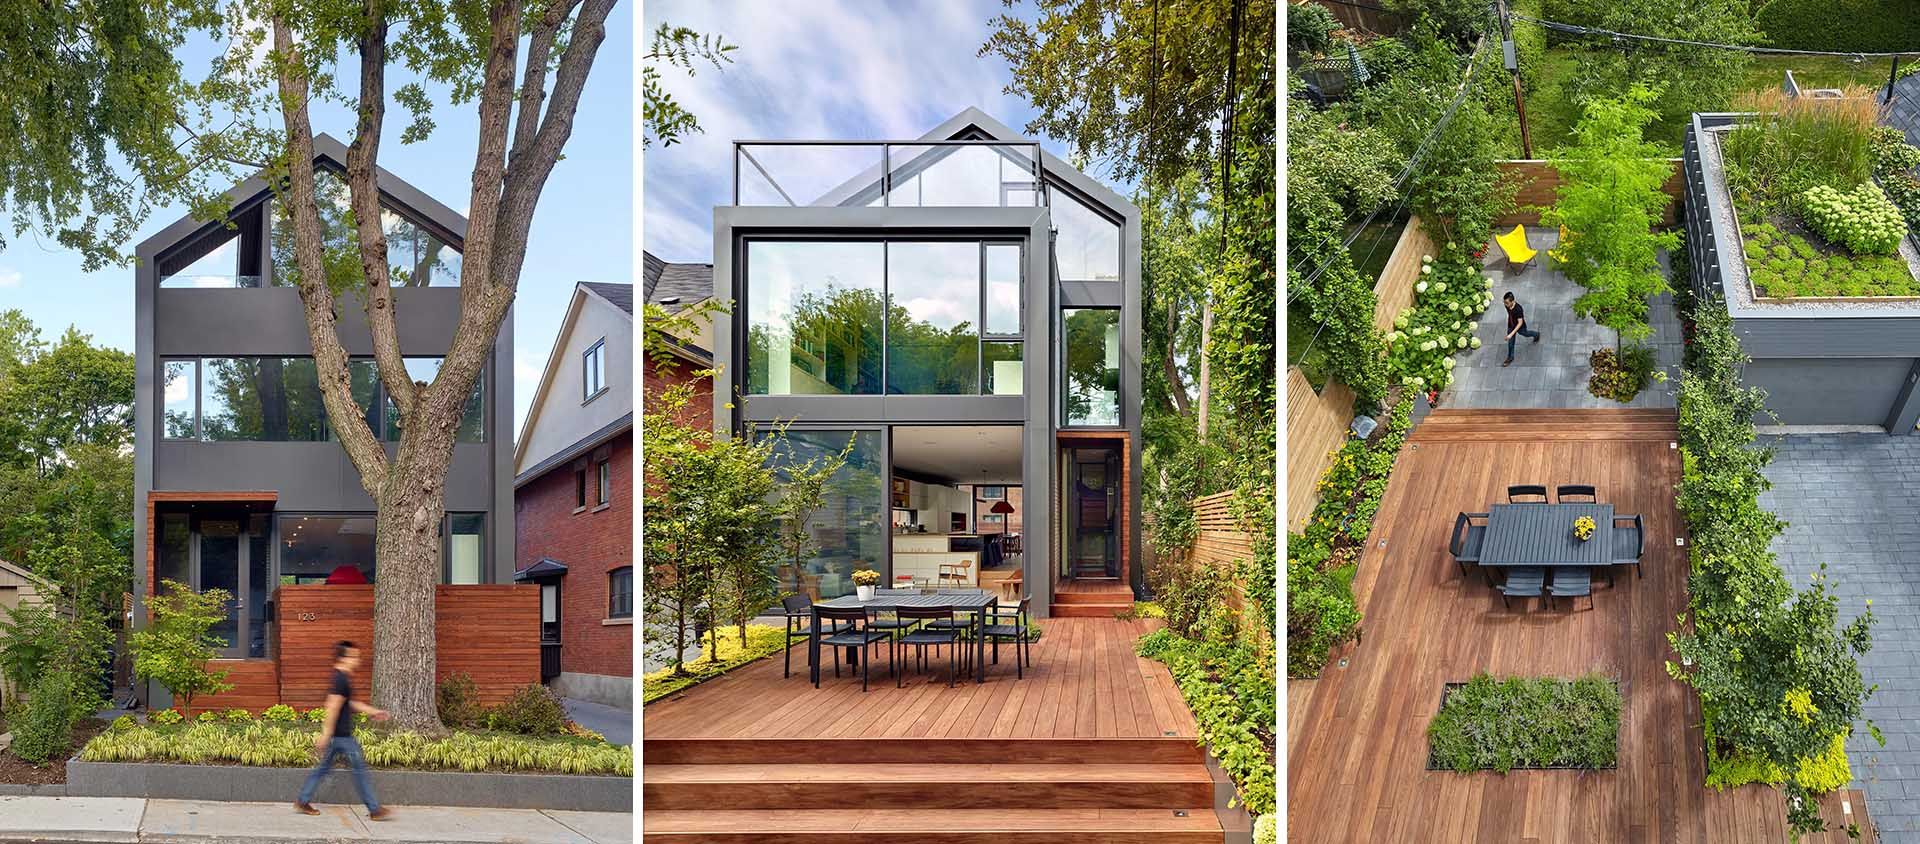 Скляні стіни та трав’яний дах: які особливості приховує неймовірна вілла у Торонто - Дизайн 24